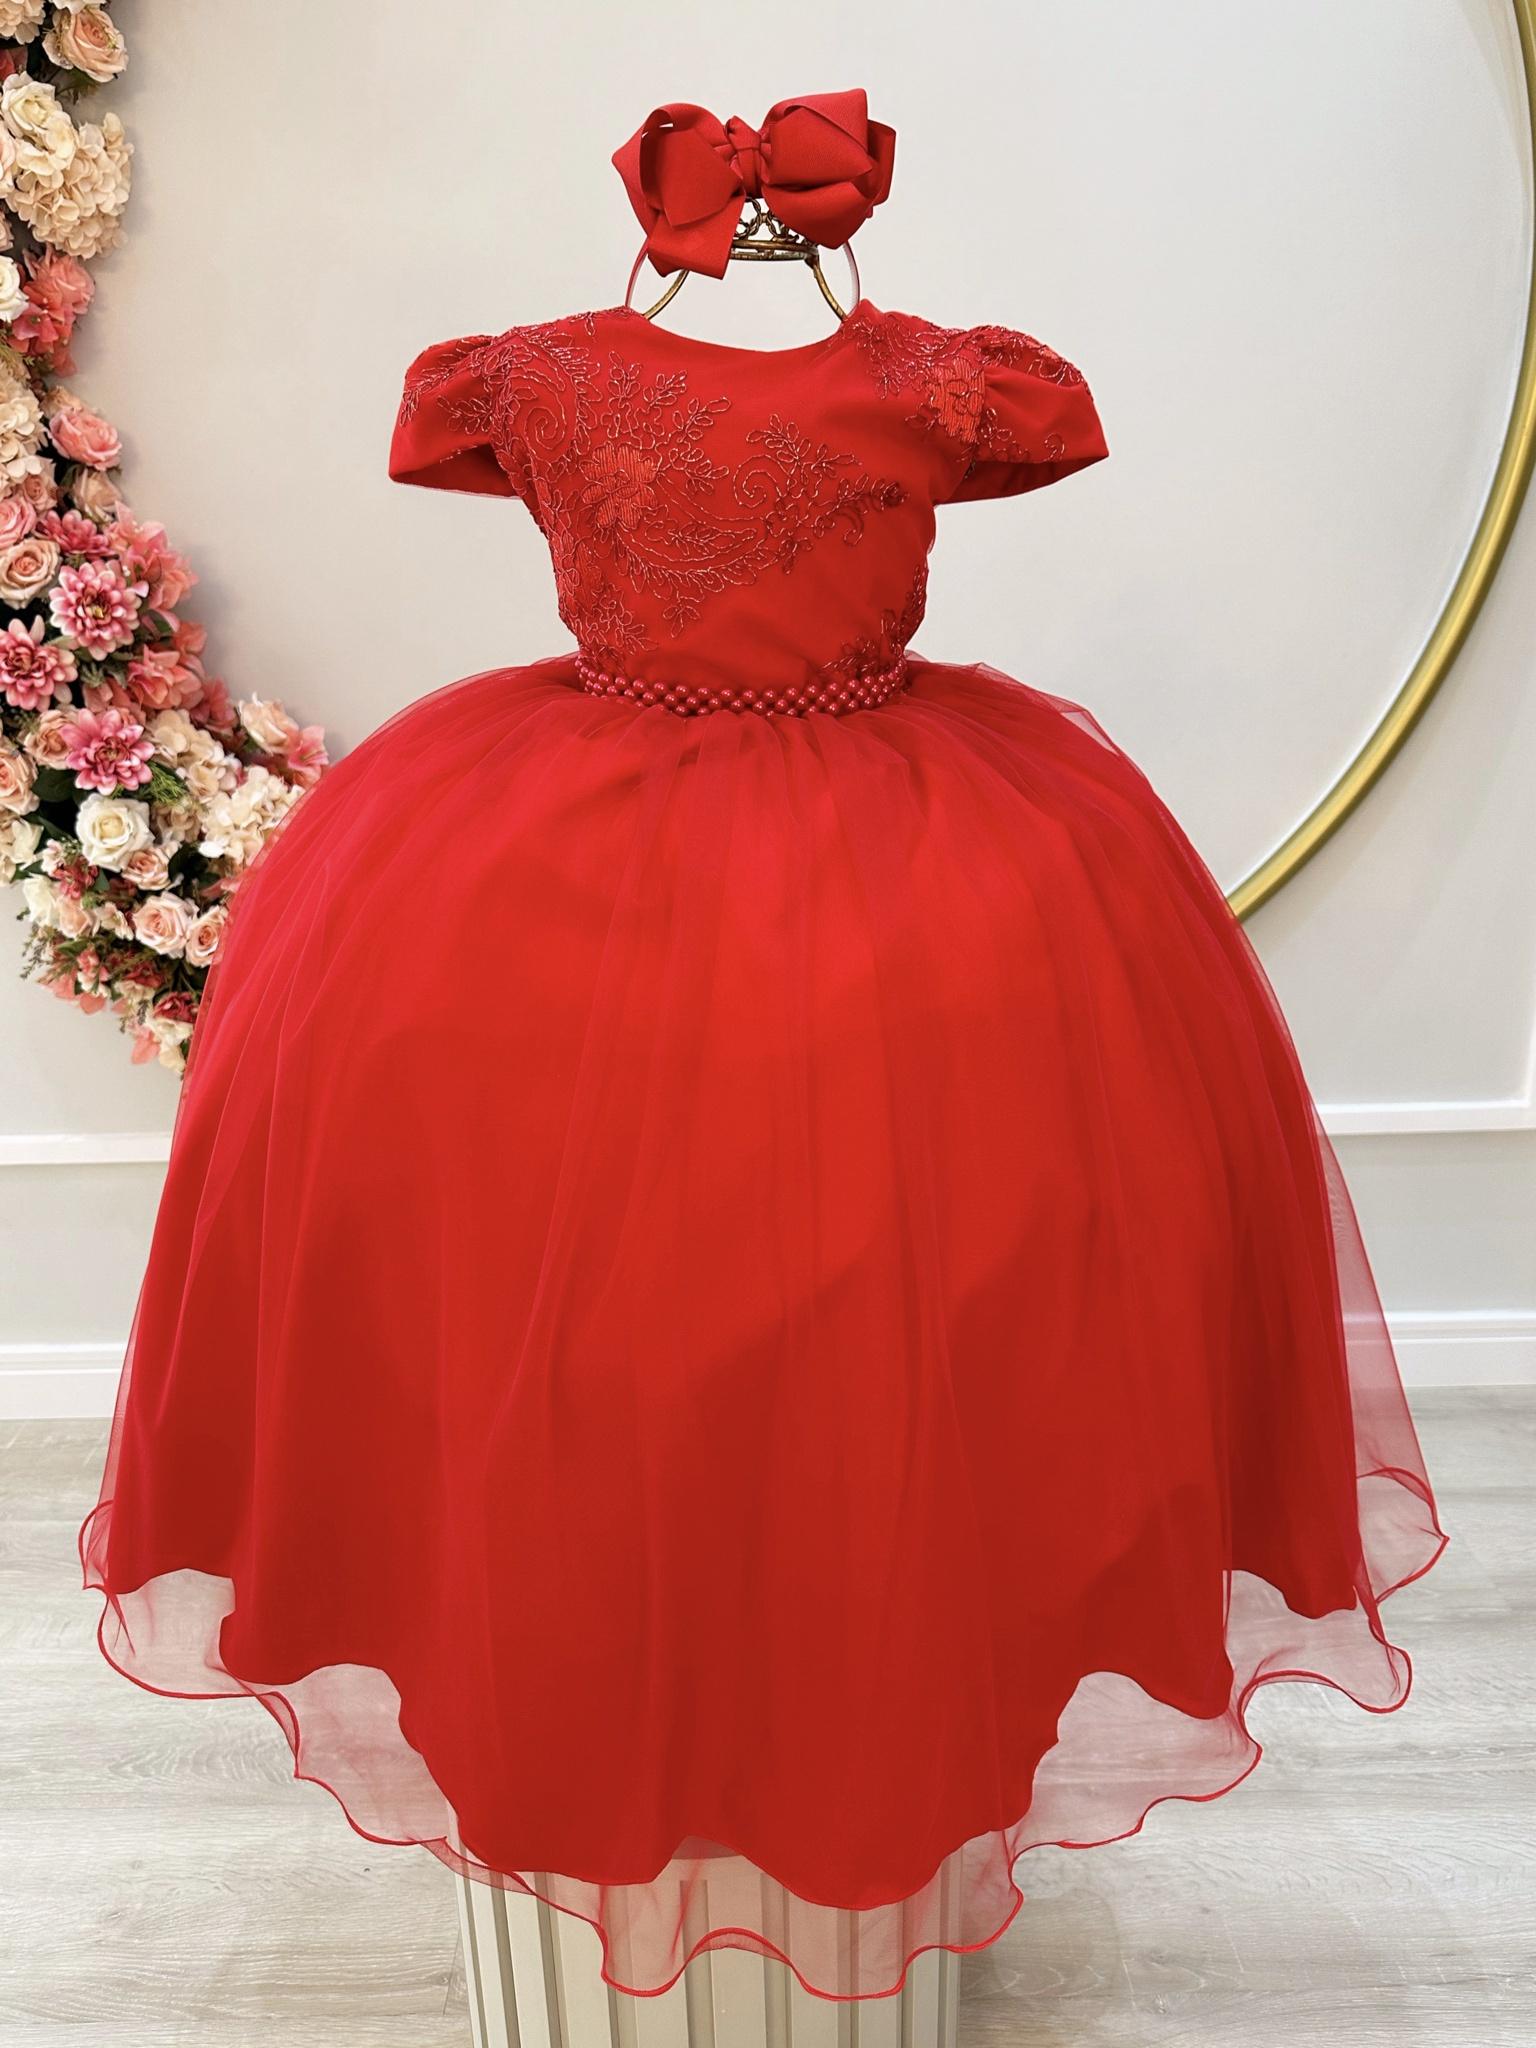 Vestido Infantil Vermelho Damas Luxo C/ Renda Metalizada